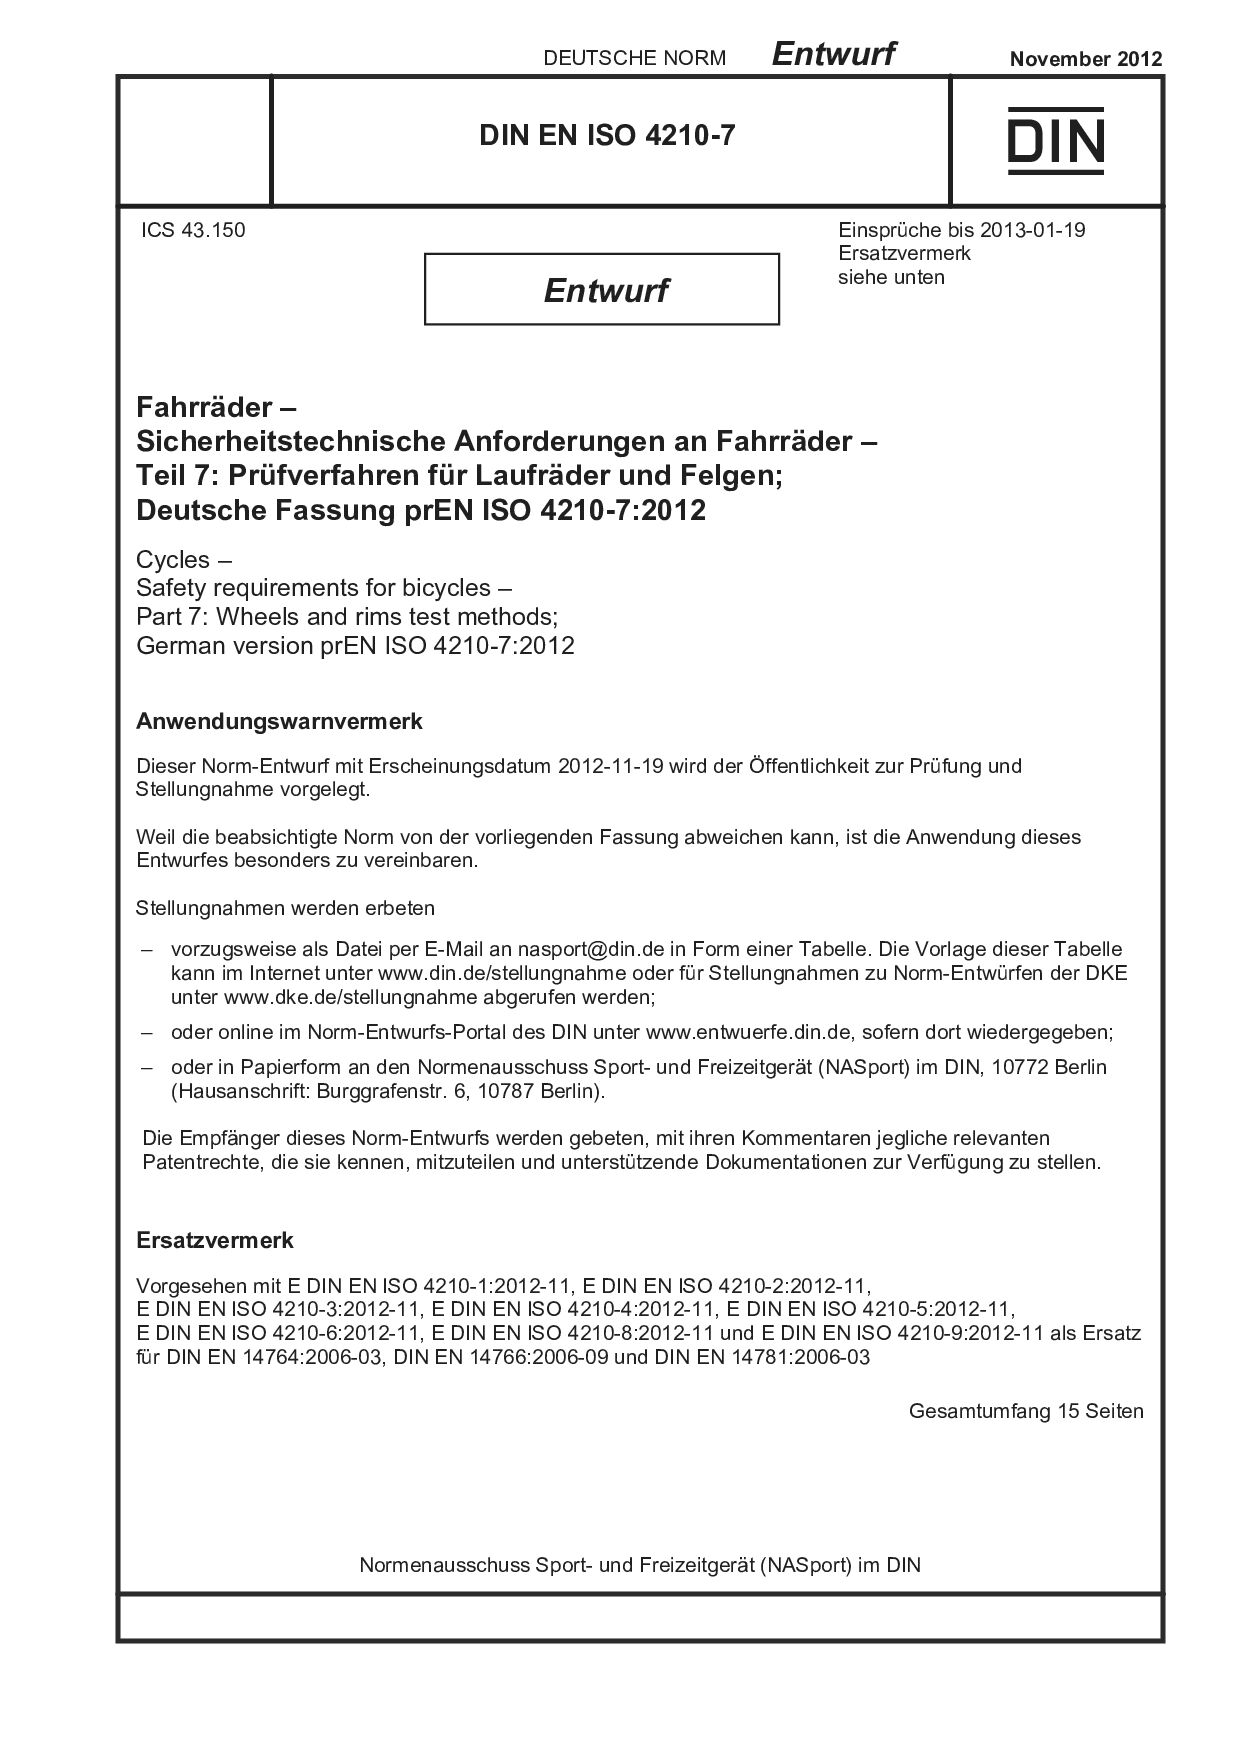 DIN EN ISO 4210-7 E:2012-11封面图